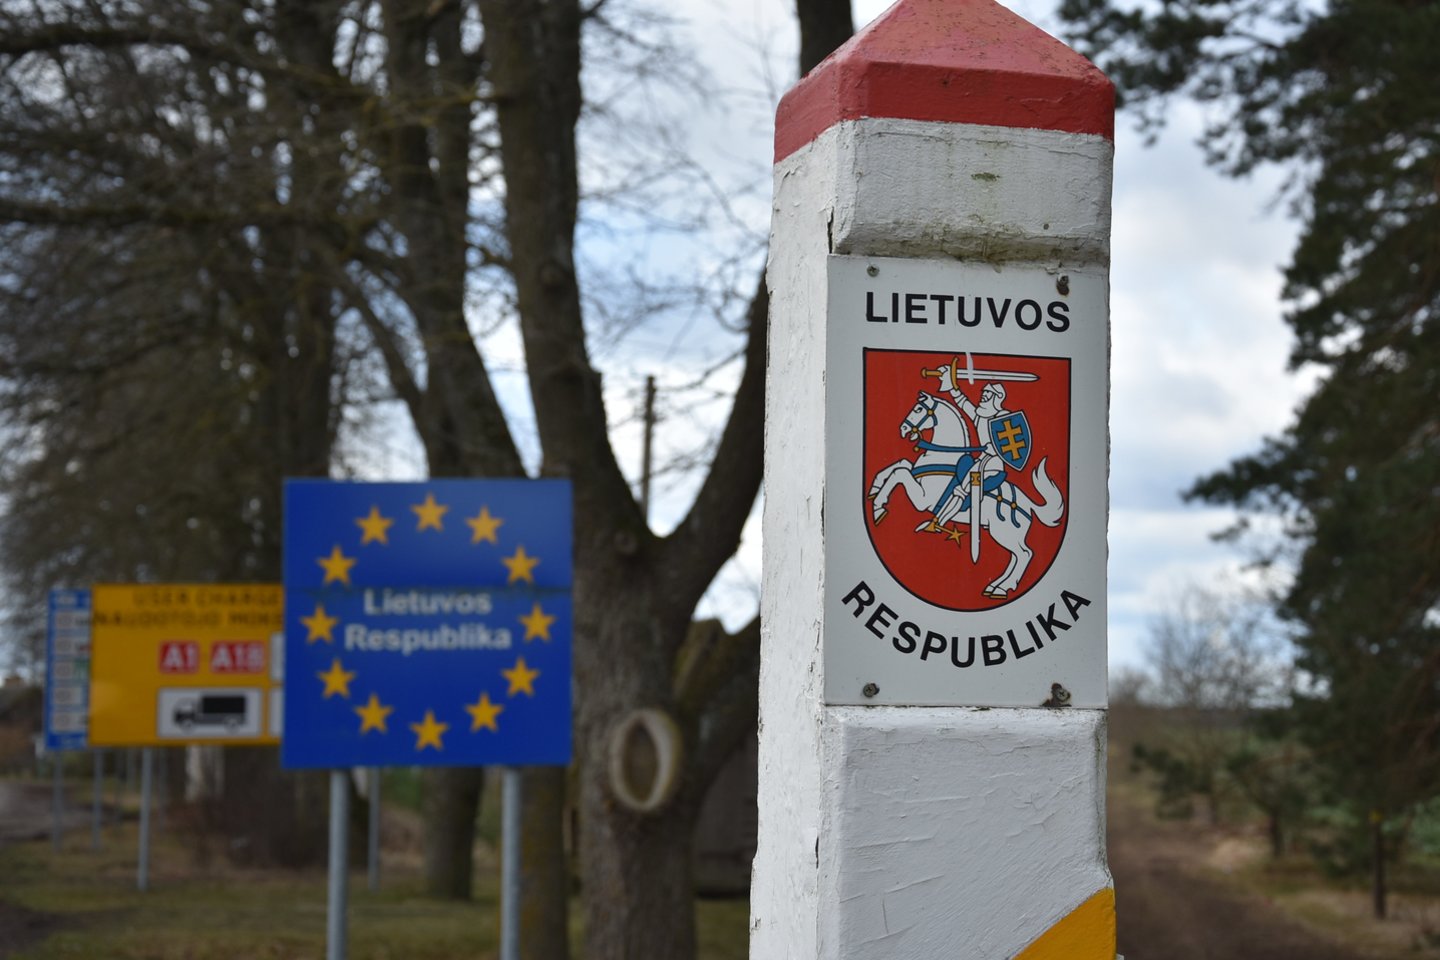 Posėdžio metu Vyriausybė nusprendė leisti iki kovo 26 d. asmenų, kurie grįžta į savo gyvenamąją vietą, tranzitą per Lietuvos teritoriją be būtinojo sustojimo.